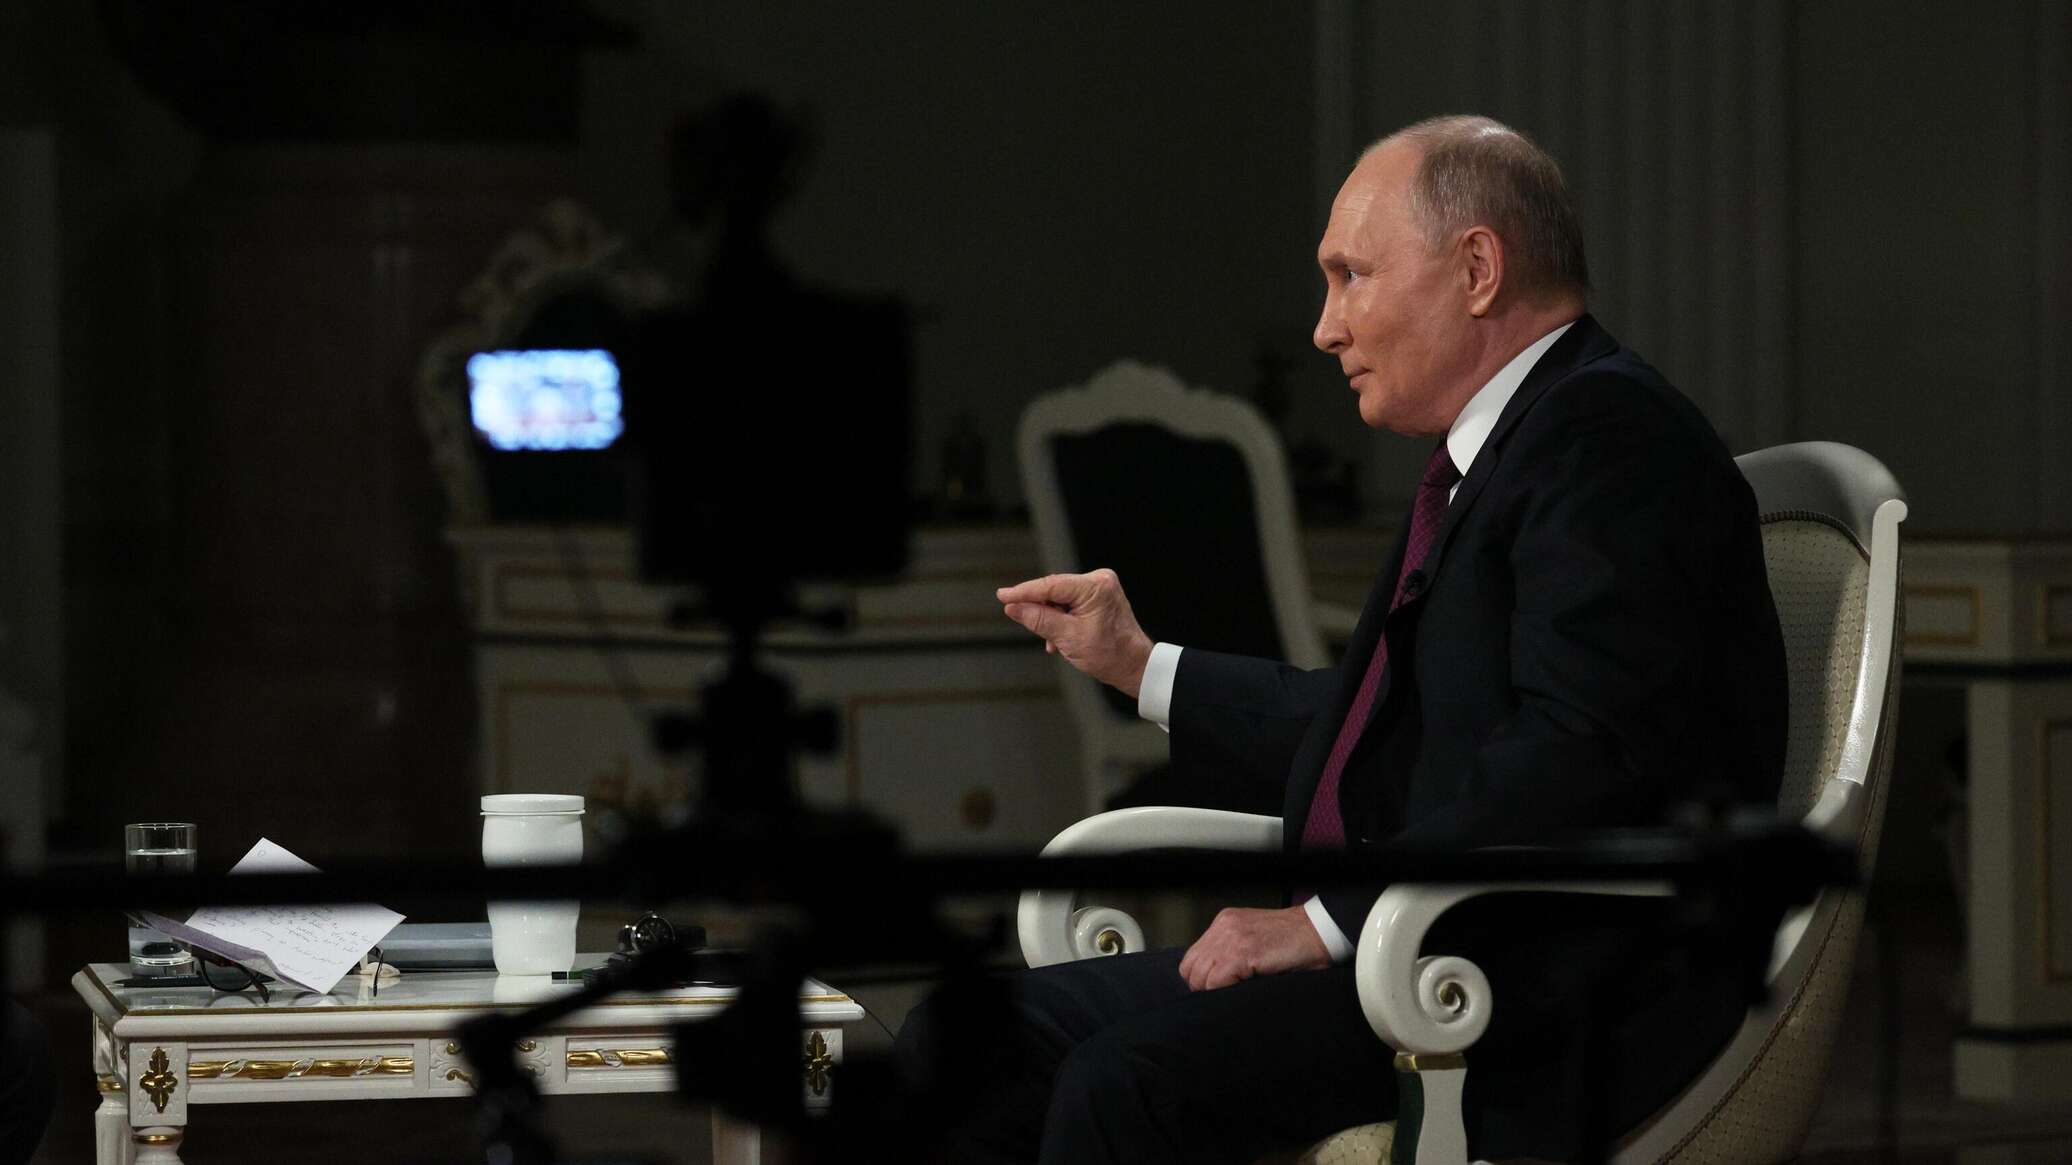 بوتين يكشف عن "مرض عضال" يصيب العالم وعلاقته بالدماغ خلال مقابلته مع كارلسون